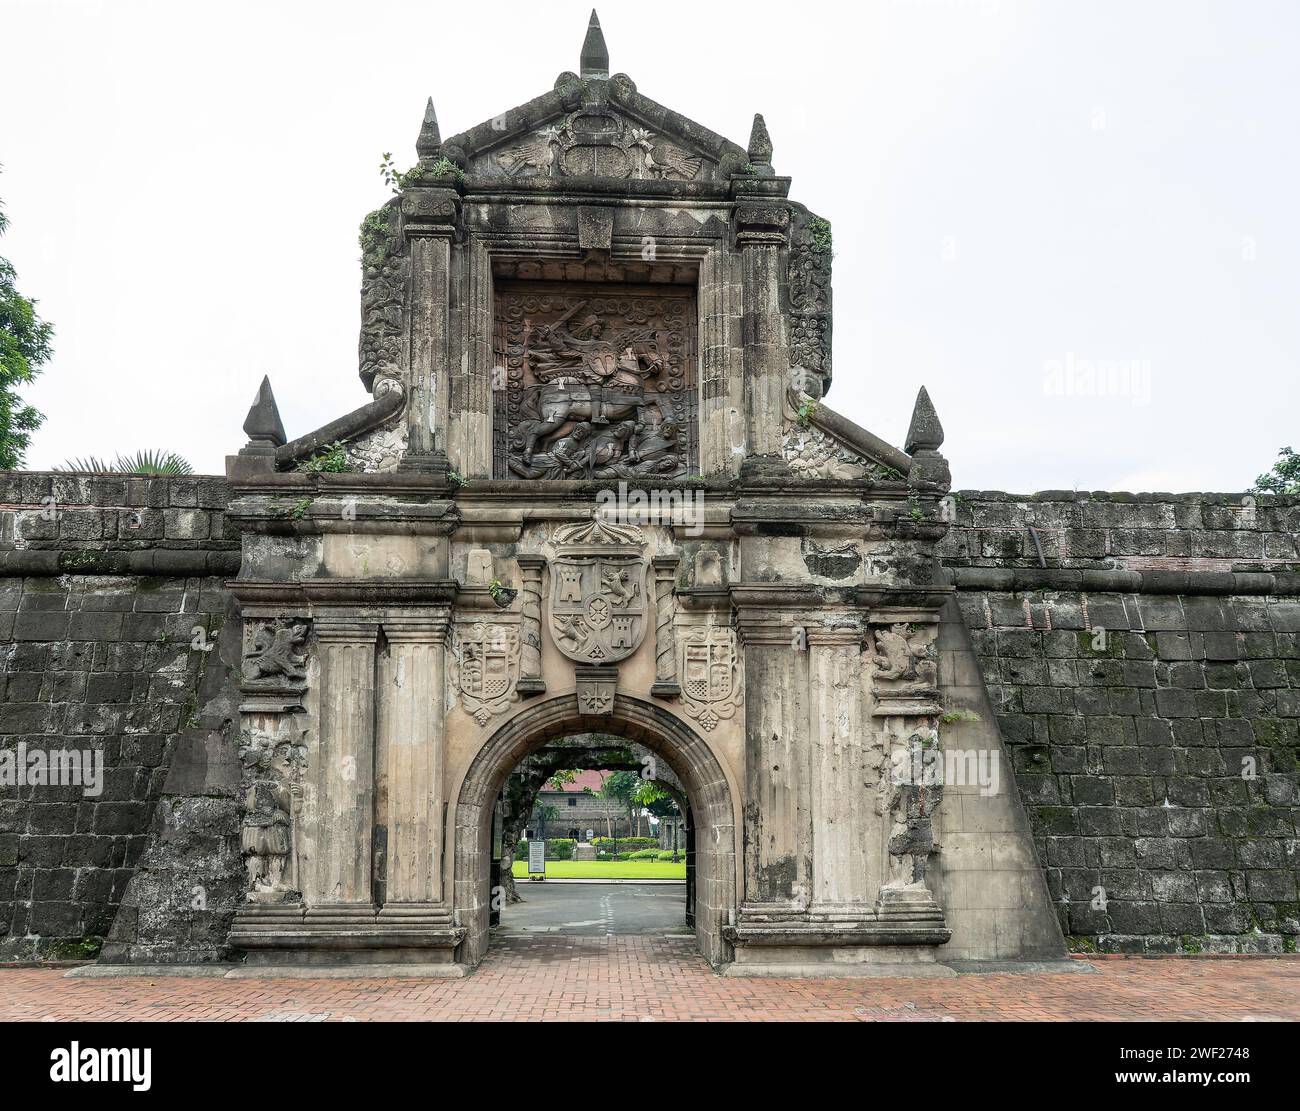 La porta principale di Fort Santiago a Intramuros, Manila, Filippine, con il rilievo di Santiago, Saint James in inglese, sopra l'ingresso. Foto Stock